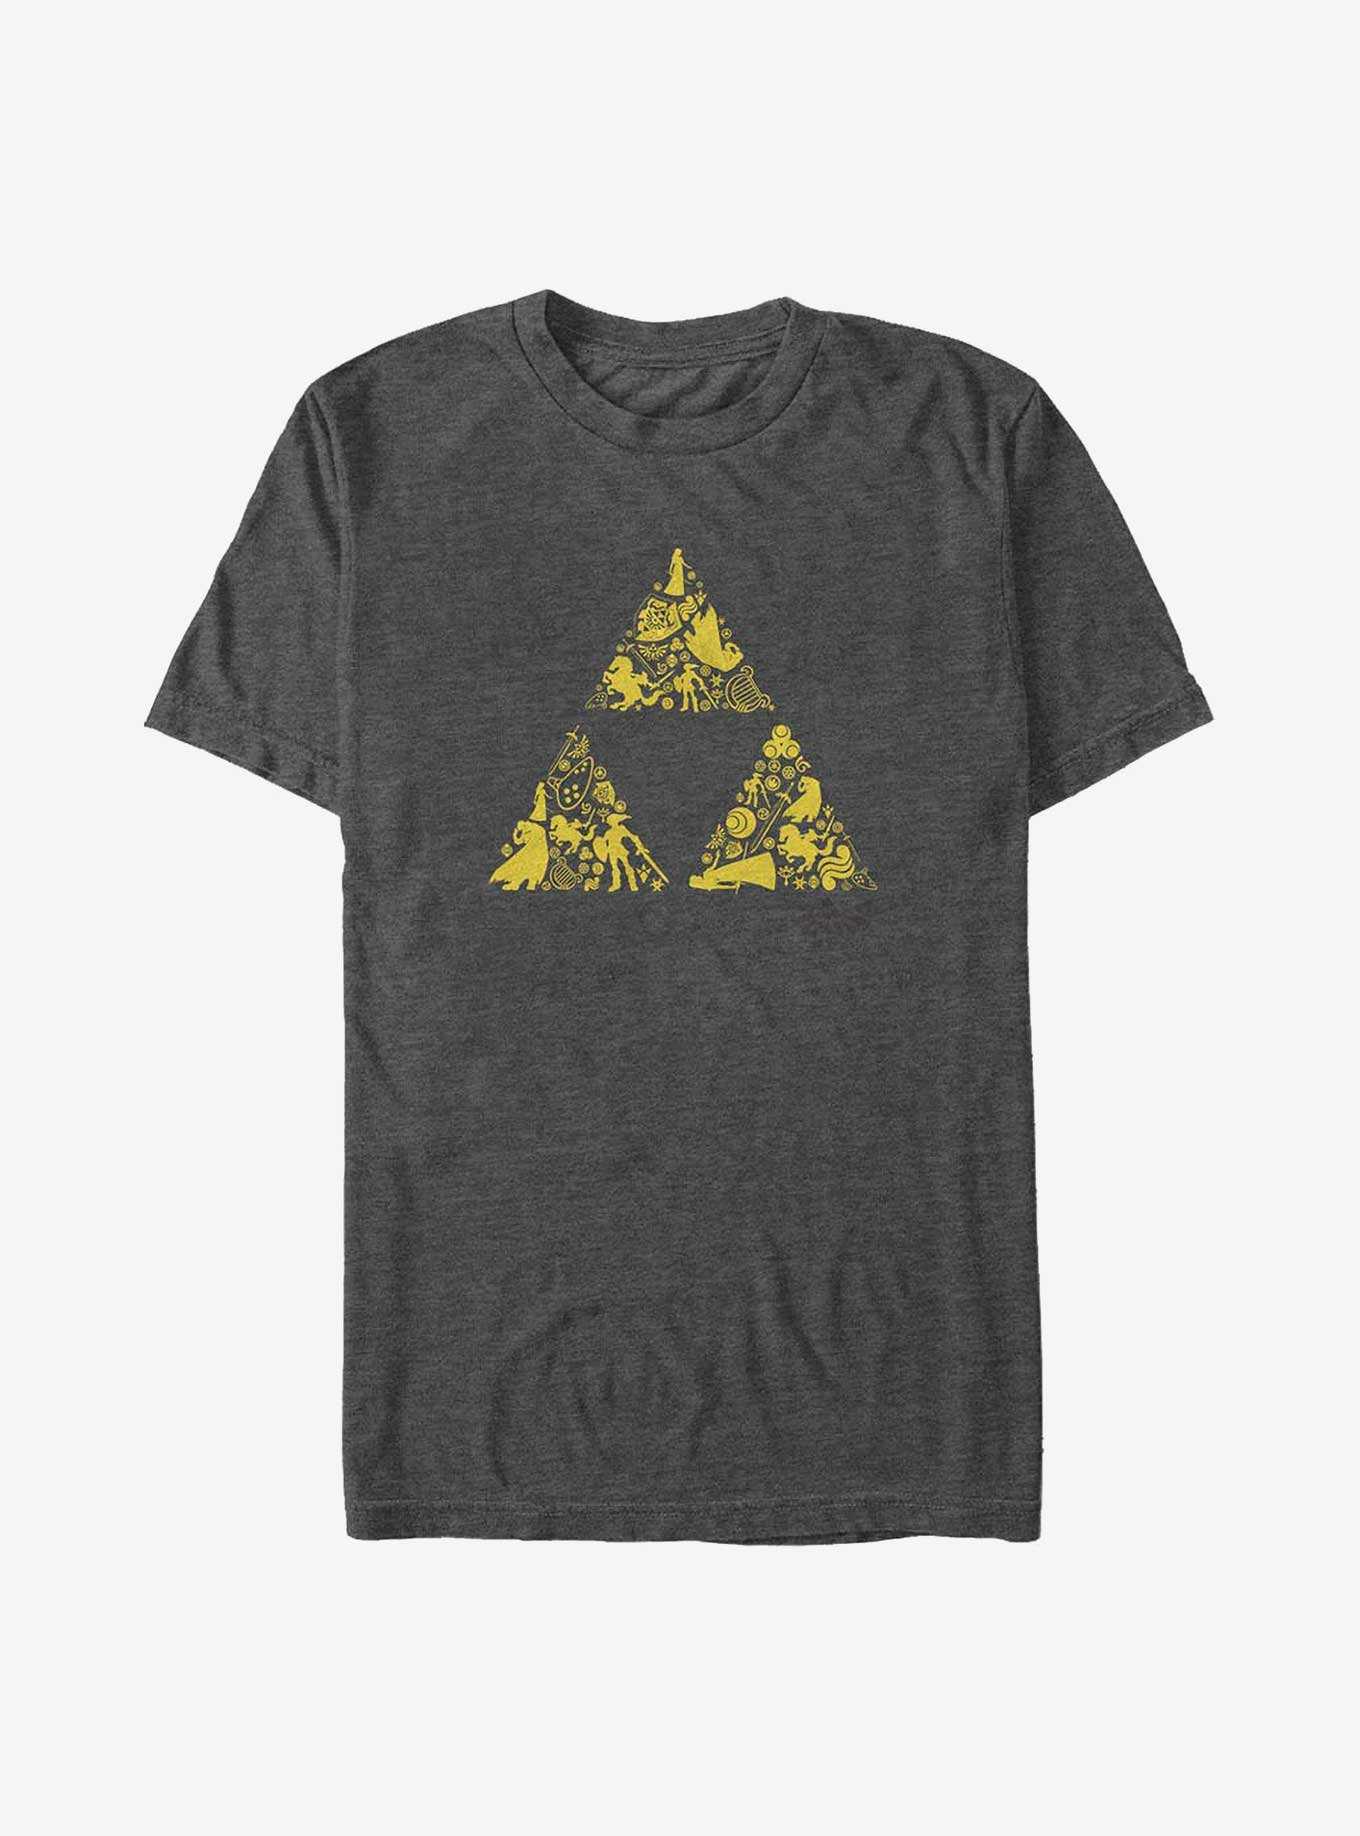 The Legend of Zelda Triforce Icons Big & Tall T-Shirt, , hi-res